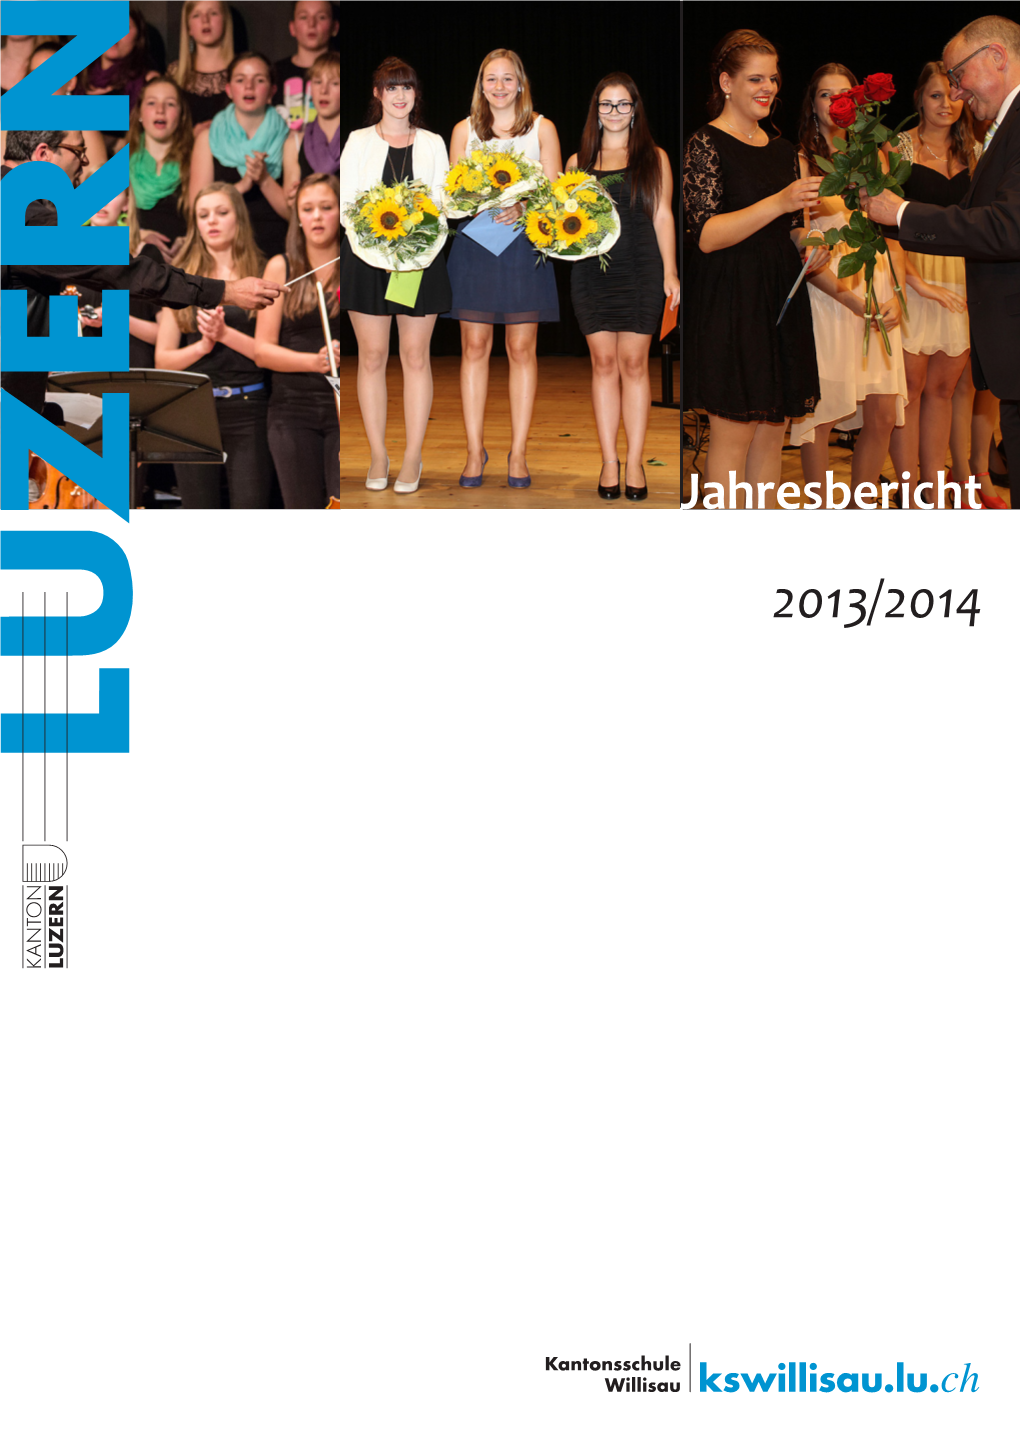 Jahresbericht 2013/2014 Editorial